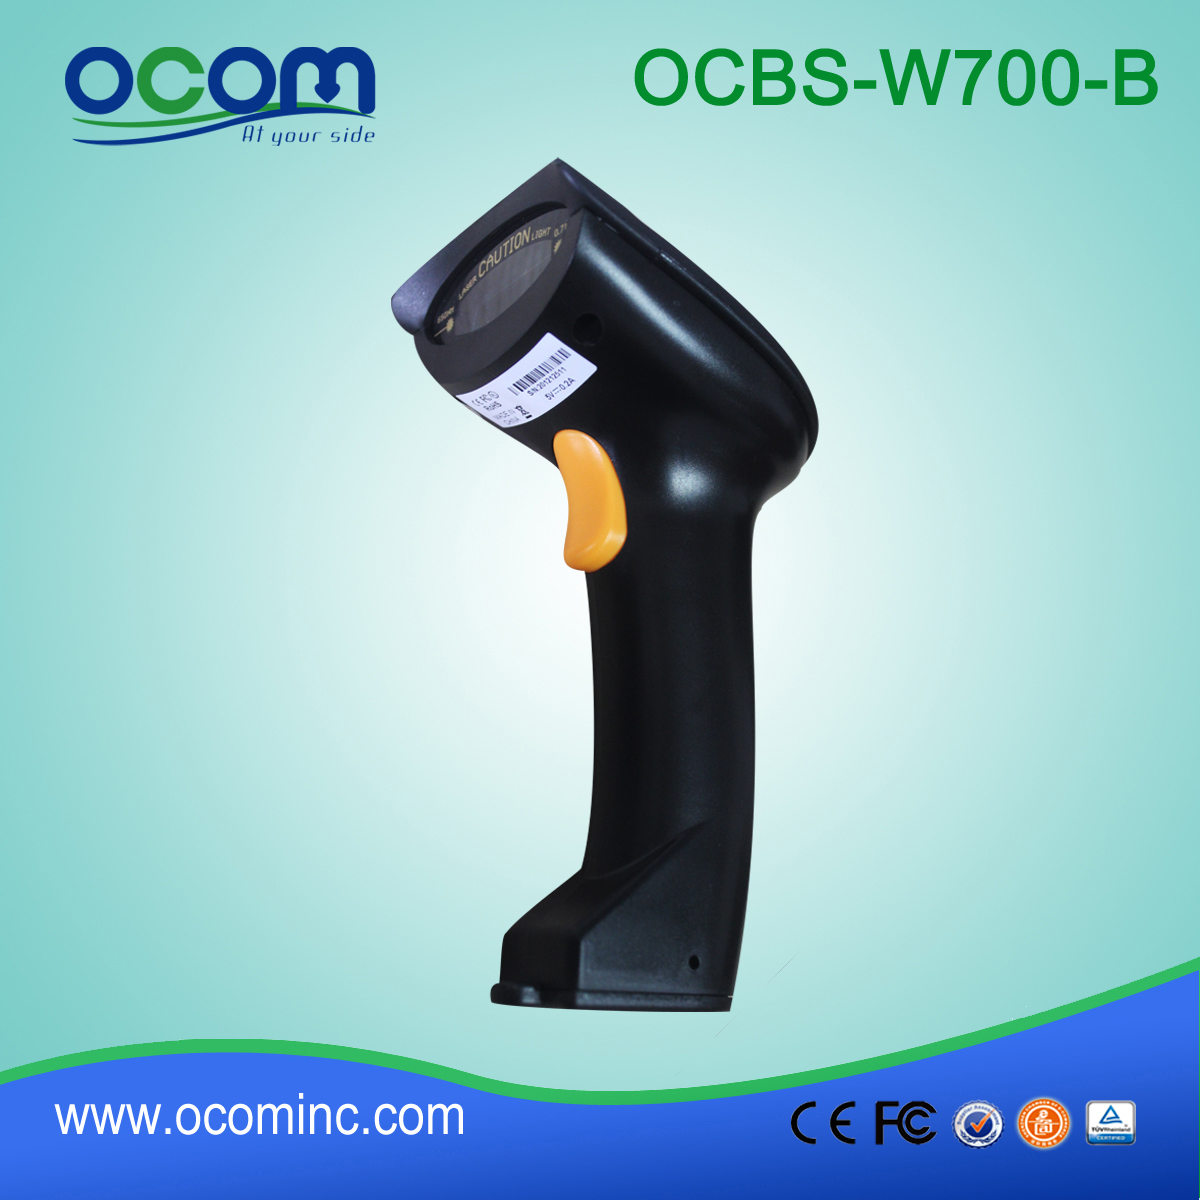 手持式蓝牙条码扫描器(OCBS-W700-B)